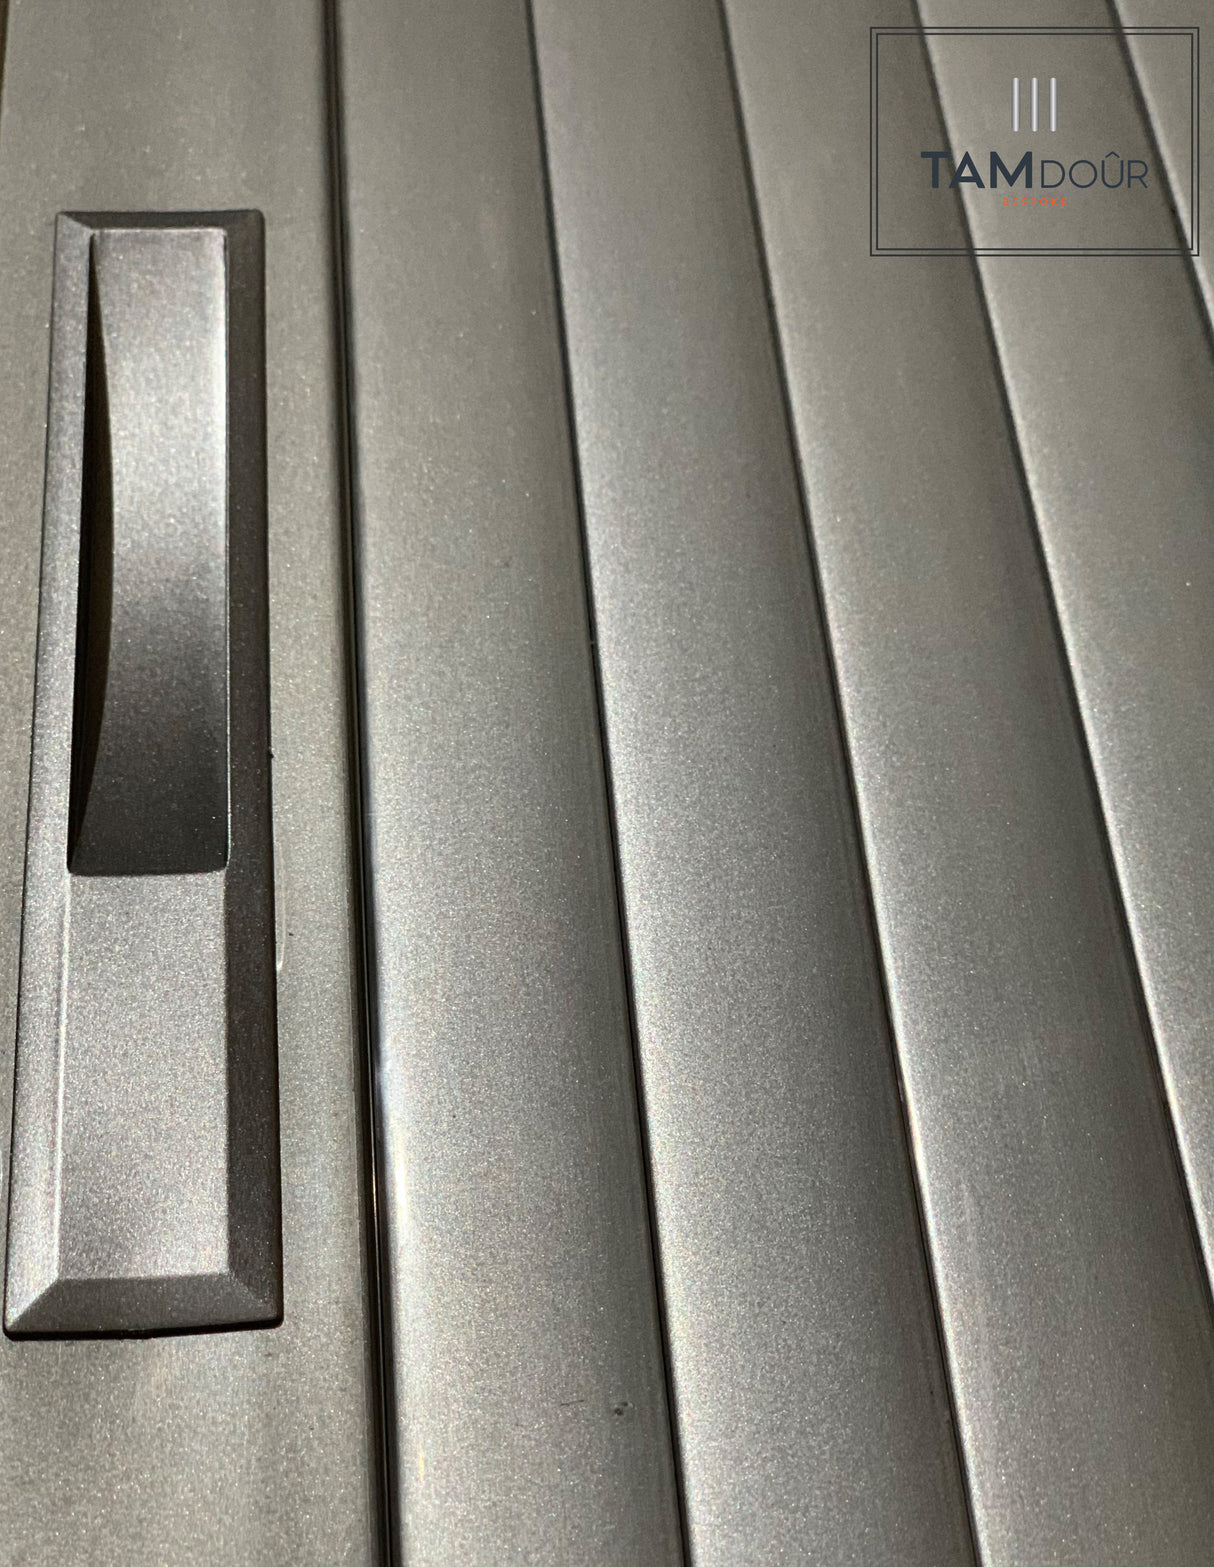 Tambour Silver Door kit - White handle 1500mm to 2000mm tall options-TAMdour-door,horizontal Slide,shower,shower door,silver door,silver door white handle,Tambour door,Tambour shower door